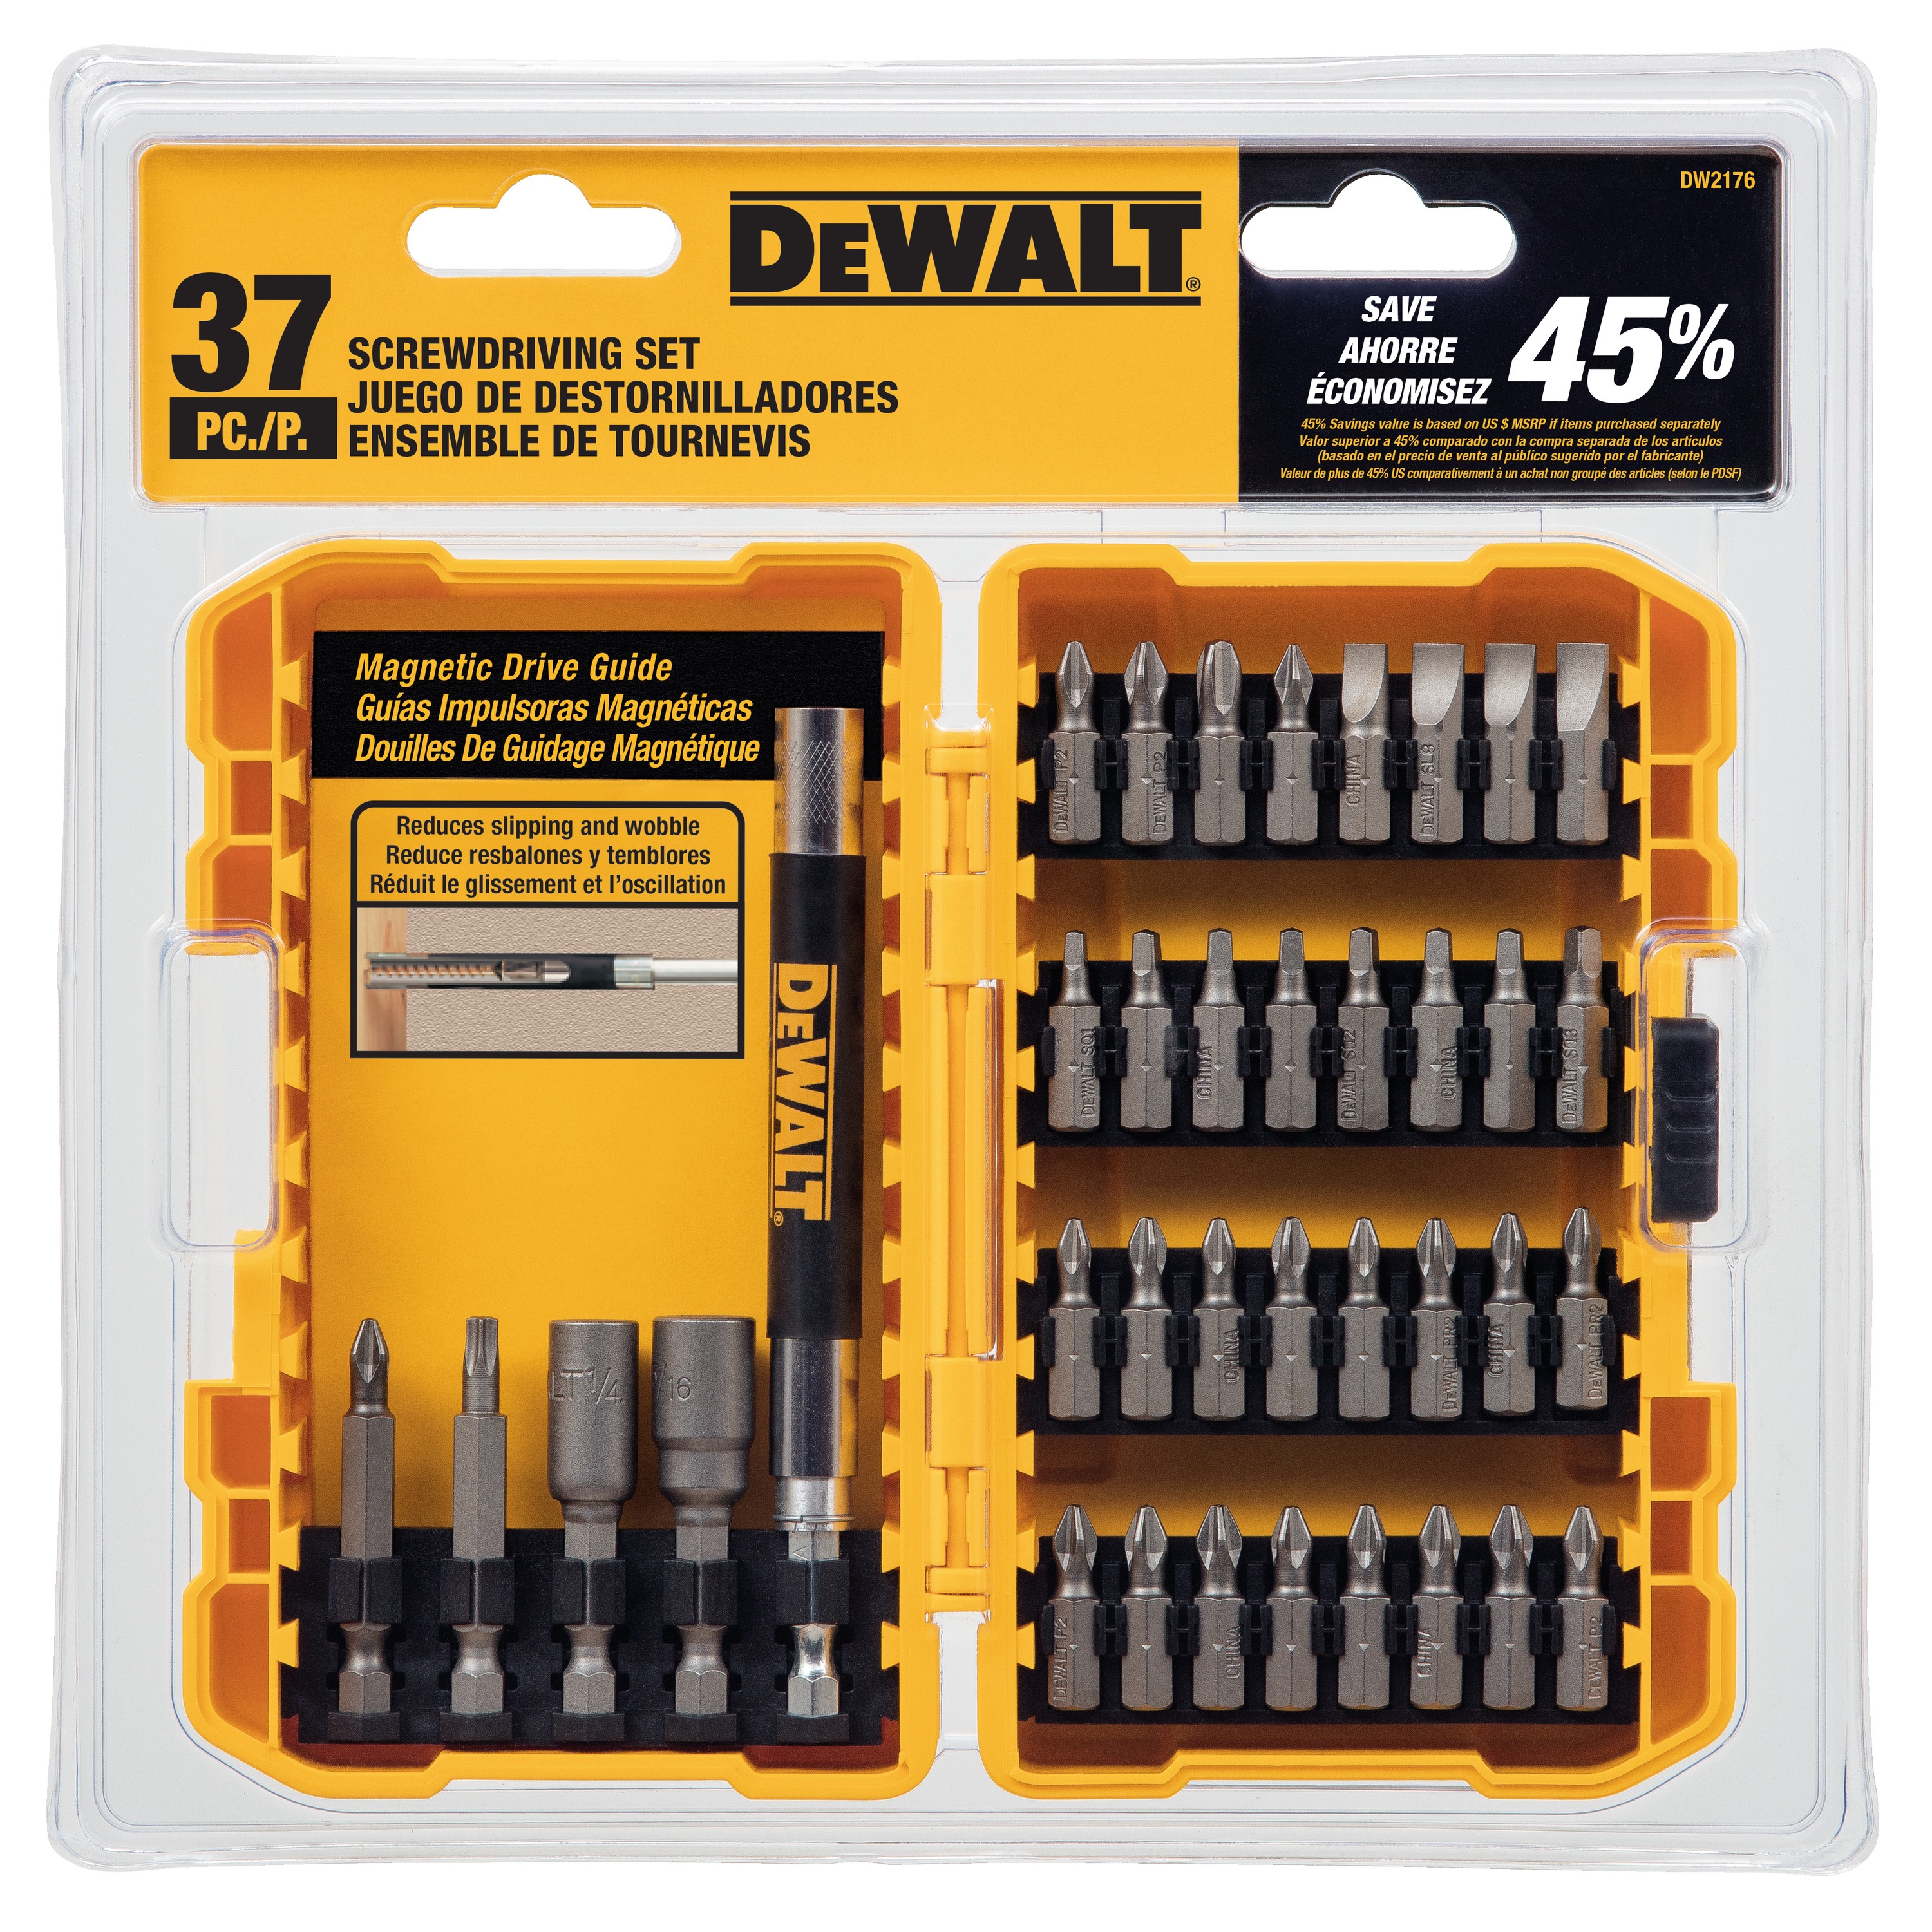 DEWALT - 37 Pc Screwdriving Set with Tough Case - DW2176